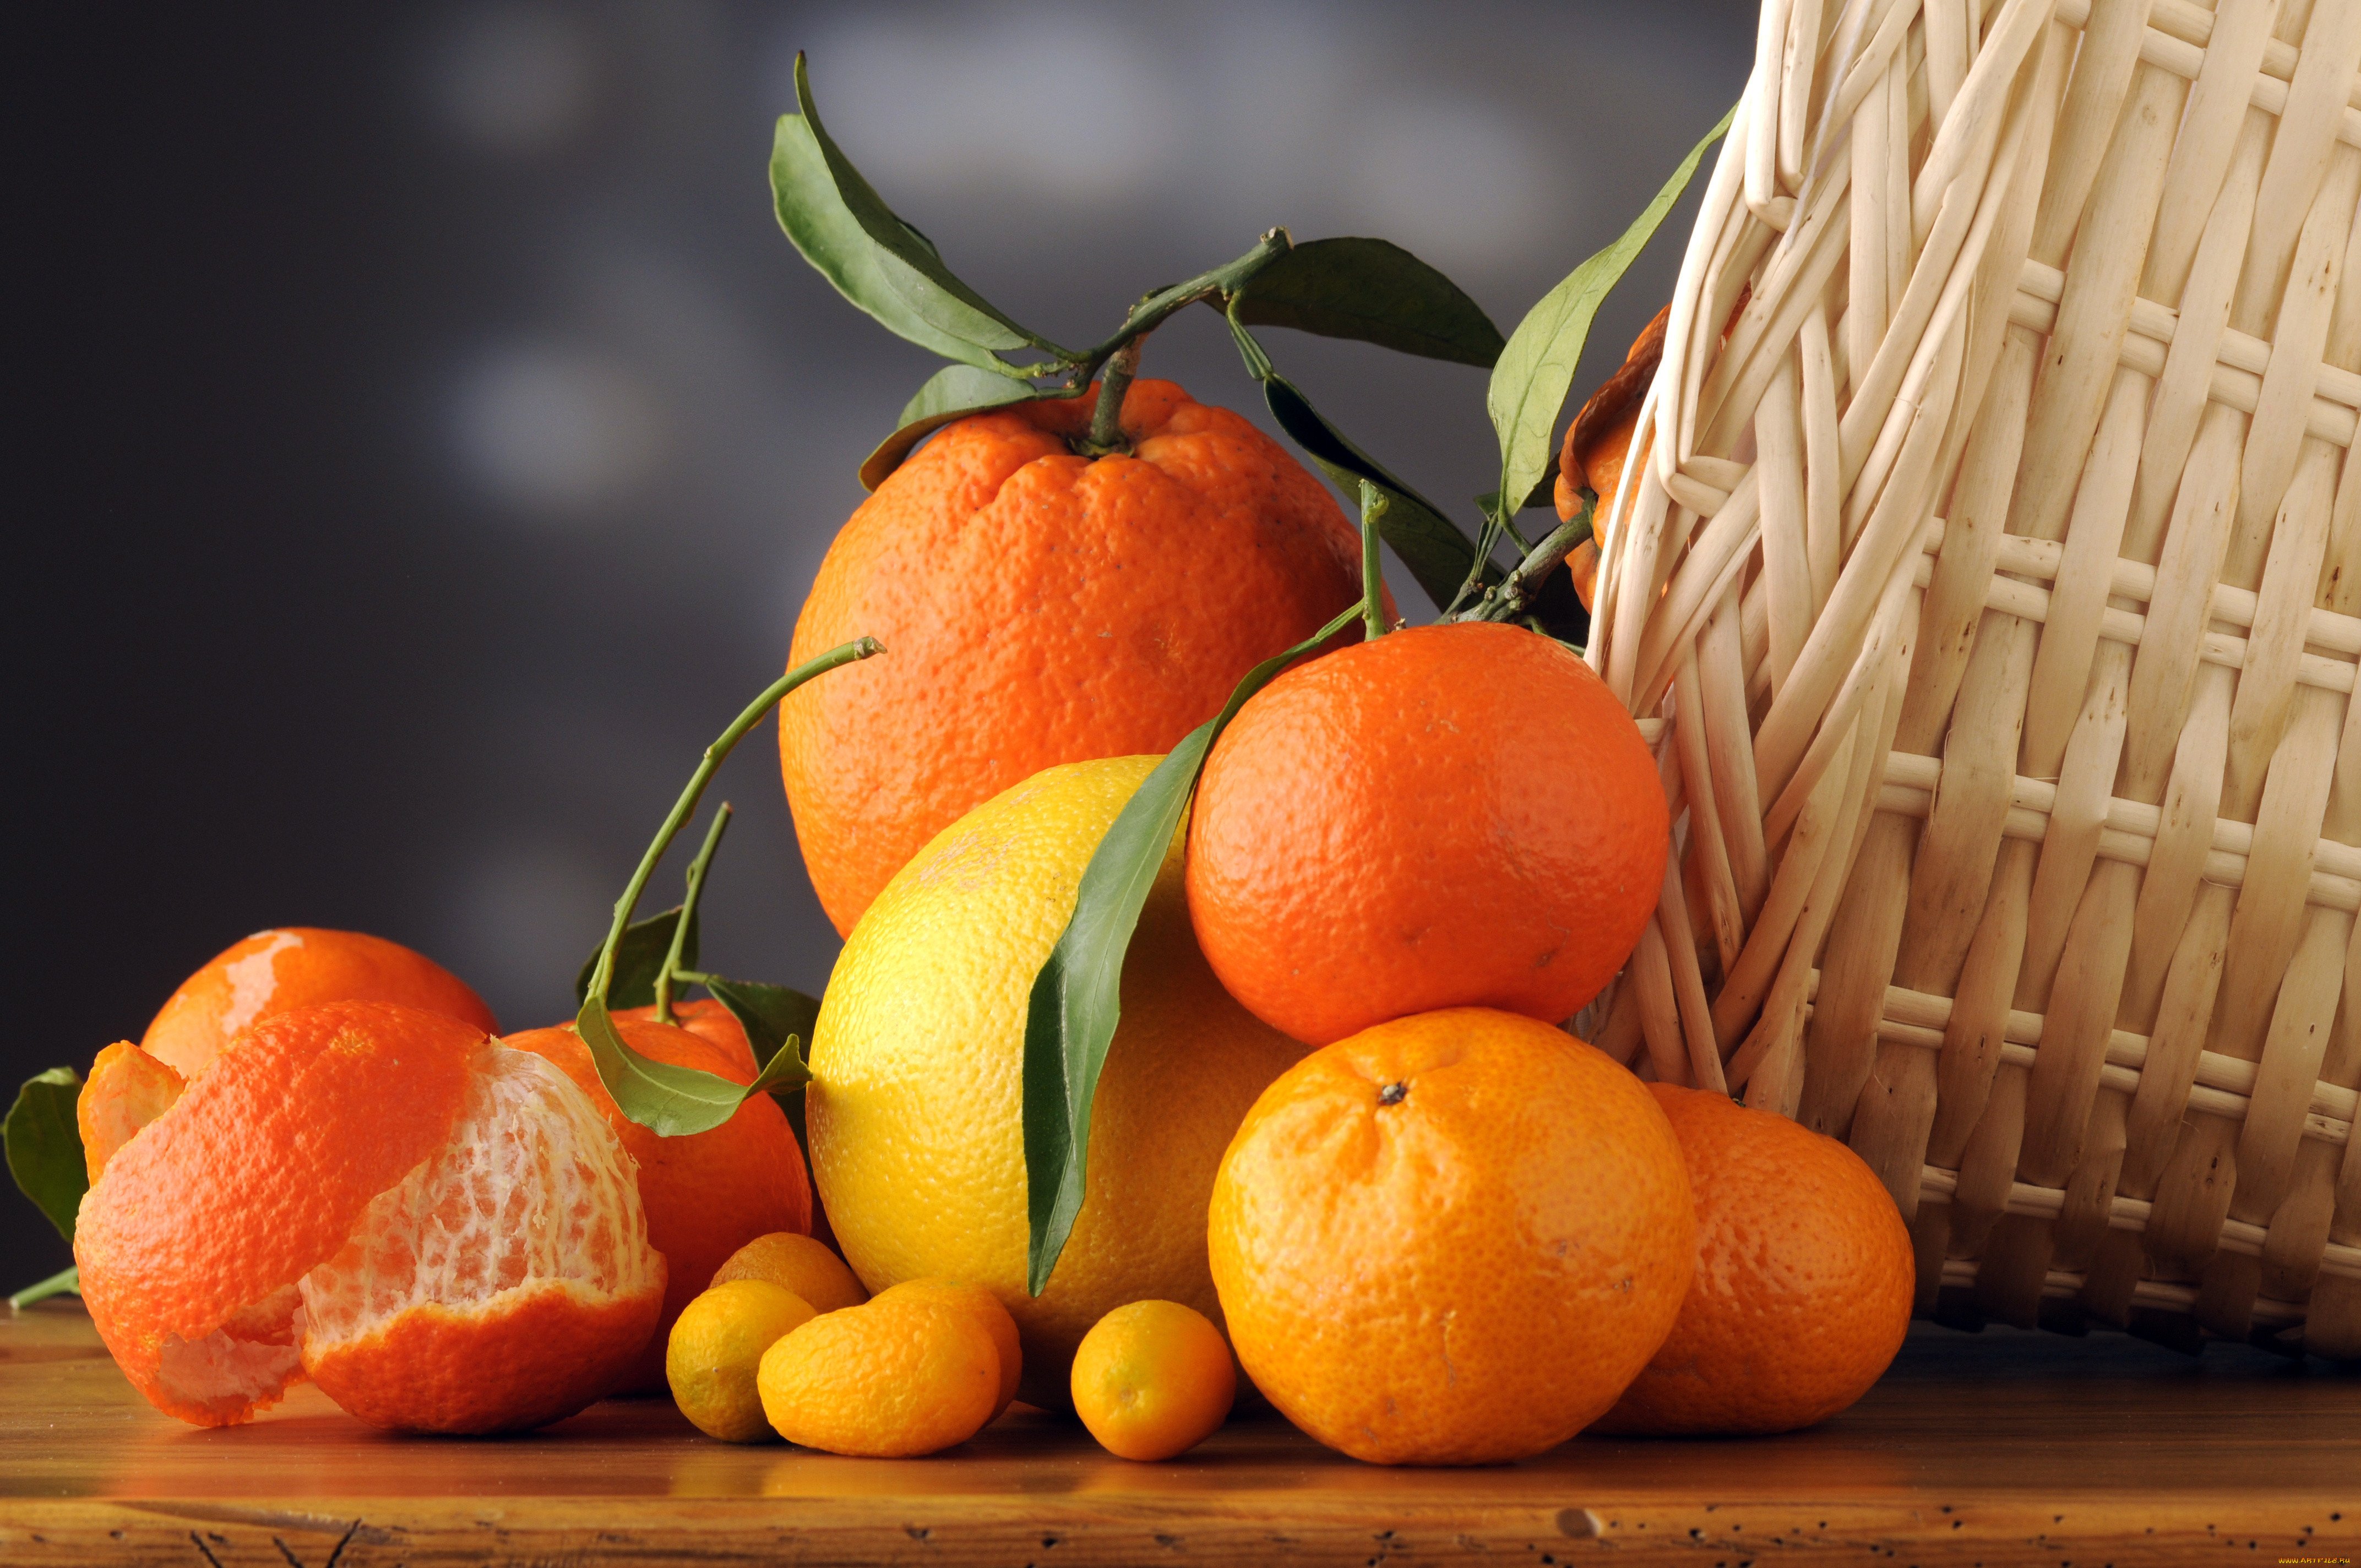 Мандарин обои. Апельсин Навелин. Цитрус мандарин +апельсин. Мандарин померанец. Красивый апельсин.